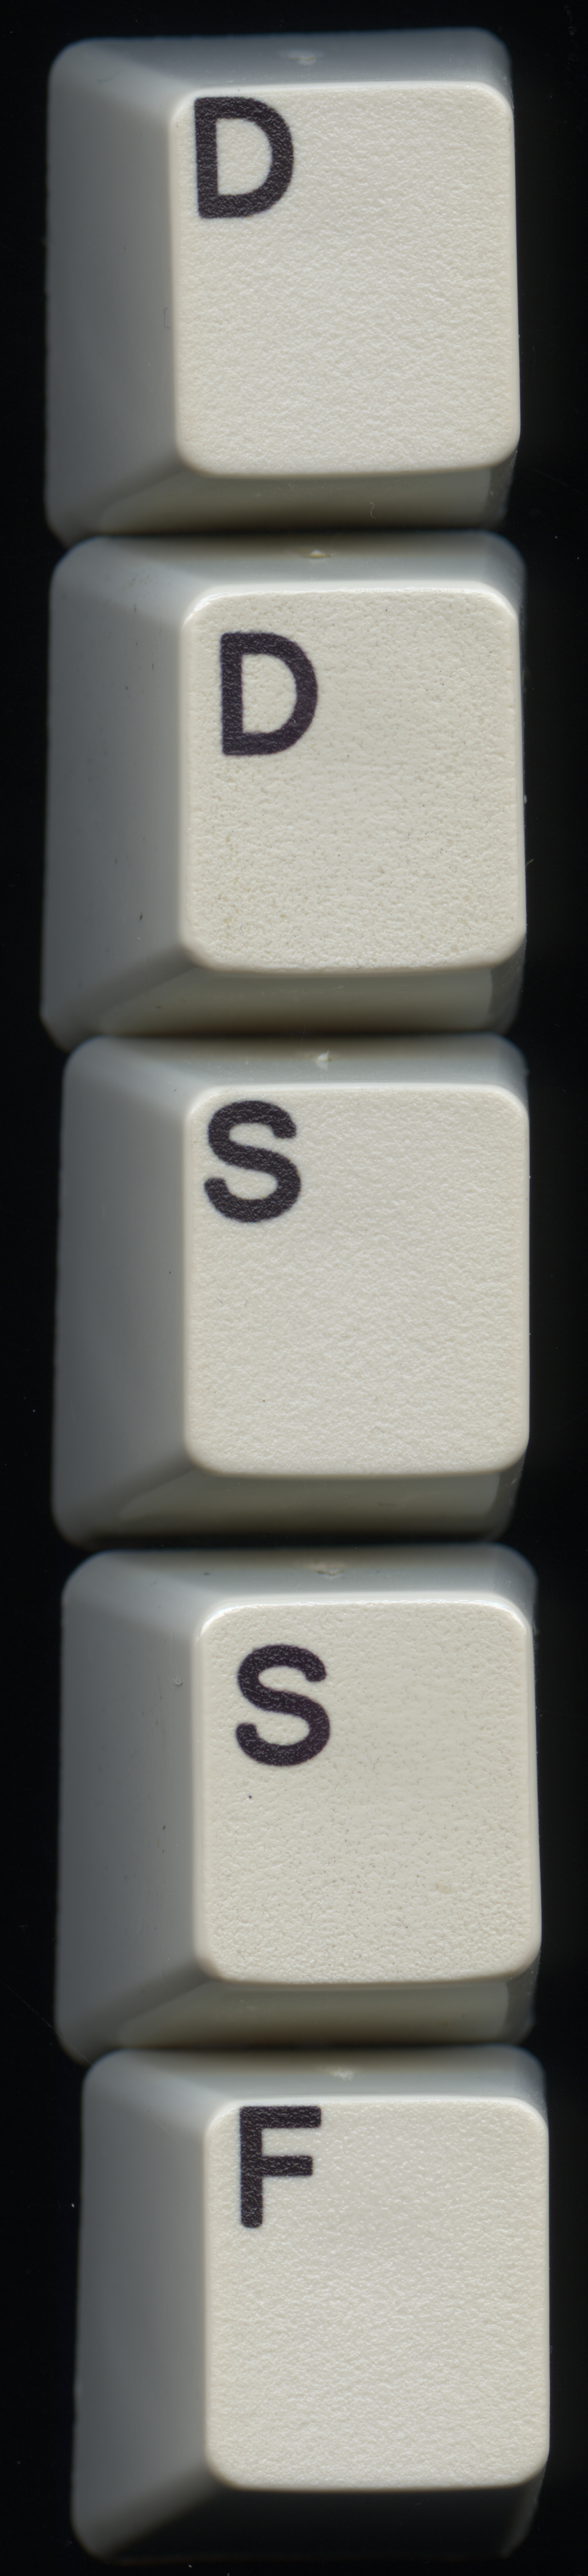 Scanned Keys - new sublimation vs. original 6110344 Jun 1984.jpg